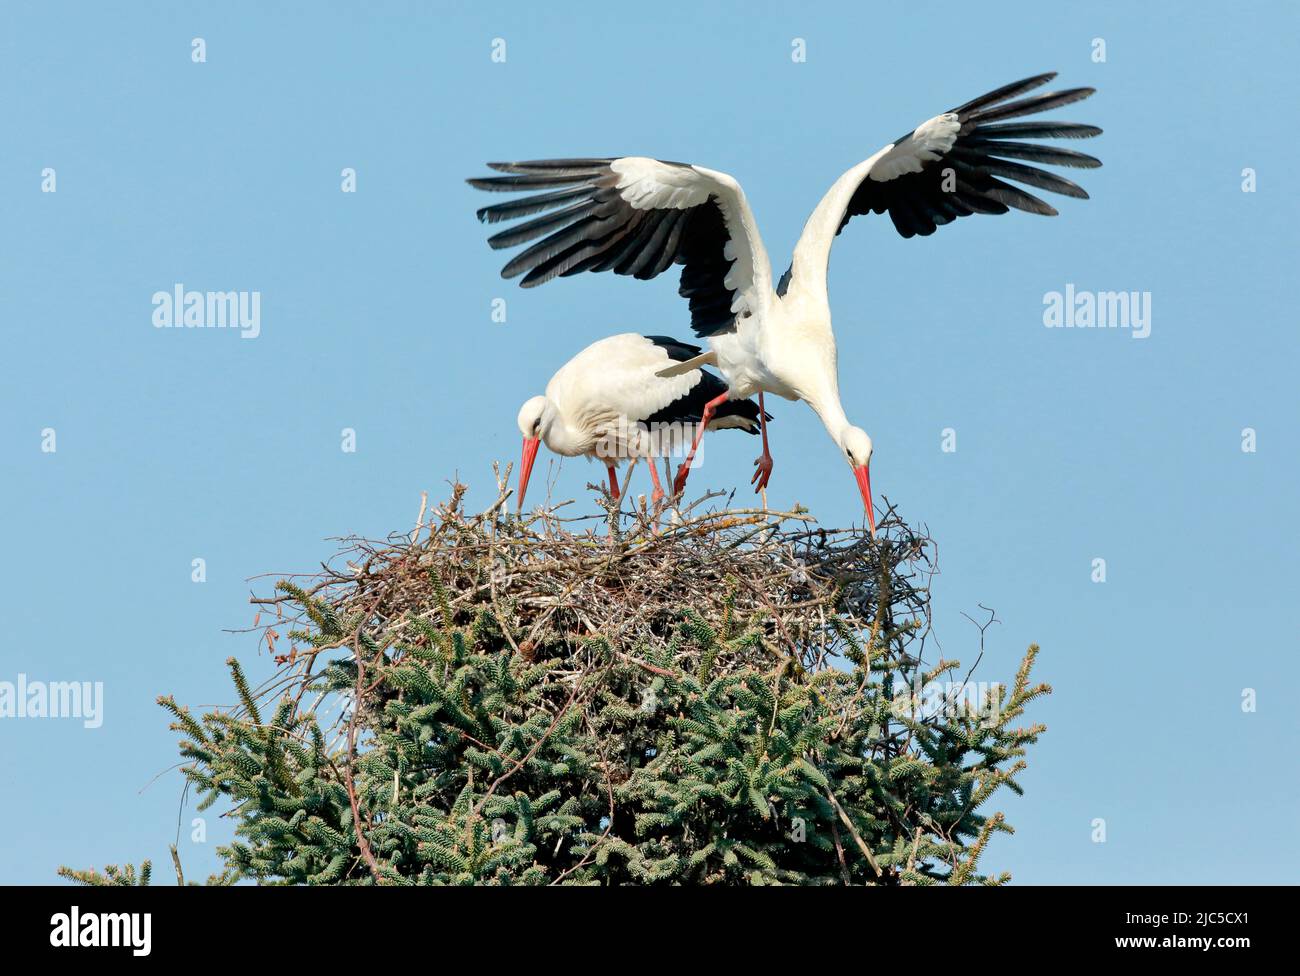 Männlicher Weißstorch fliegt für die Nahrungssuche aus dem Nest während das Weibchen zurückbleibt, Frühling, Oetwil am See, Kanton Zürich, Schweiz *** Foto Stock